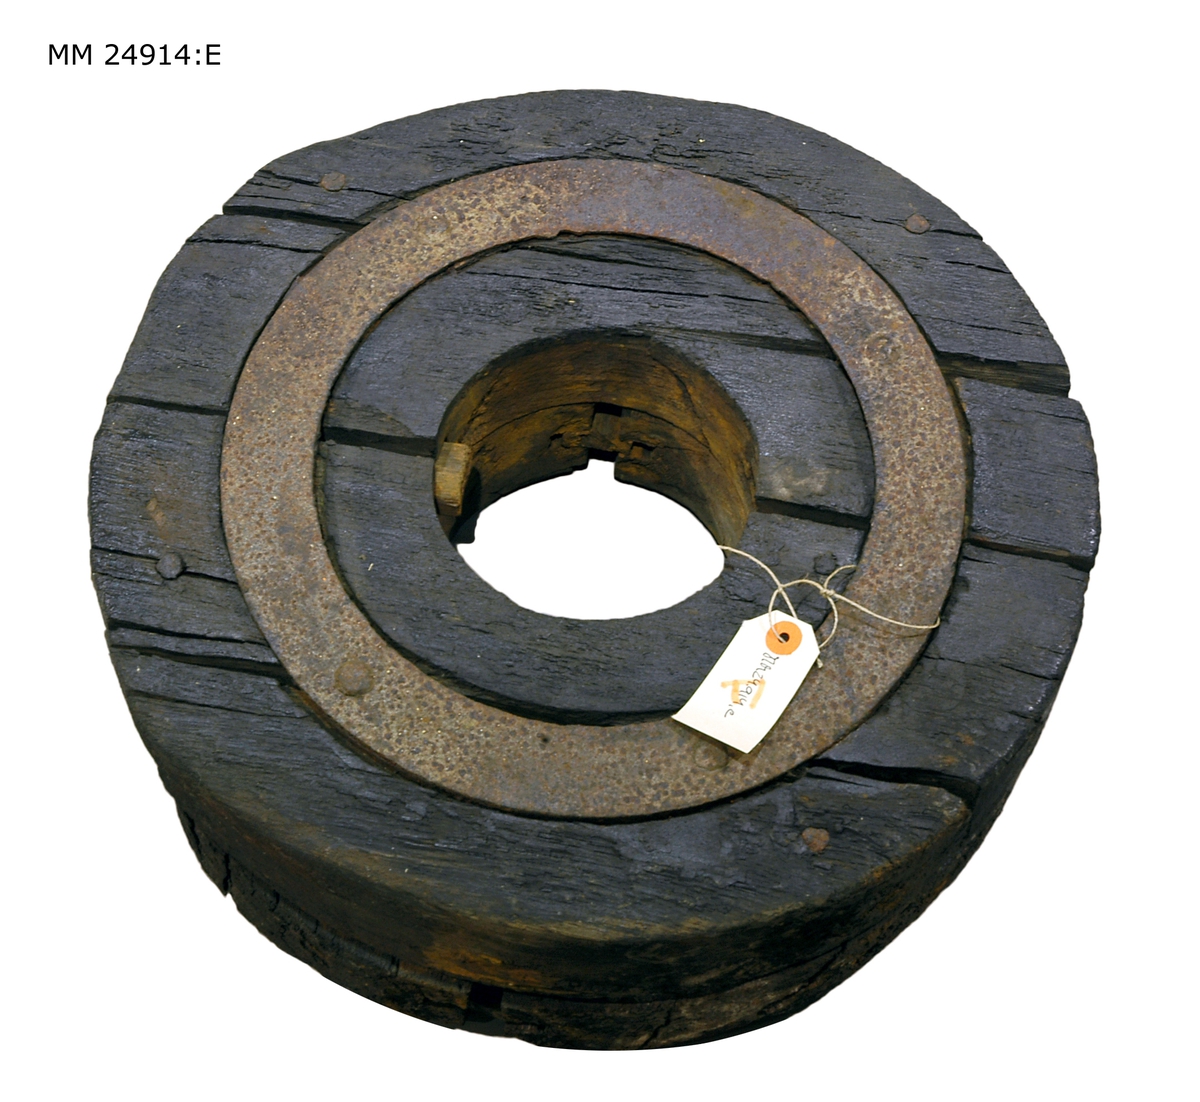 Svart hjul som består av flera hopsatta delar som hålls samman av en järnring. Hål i mitten för hjulaxeln.